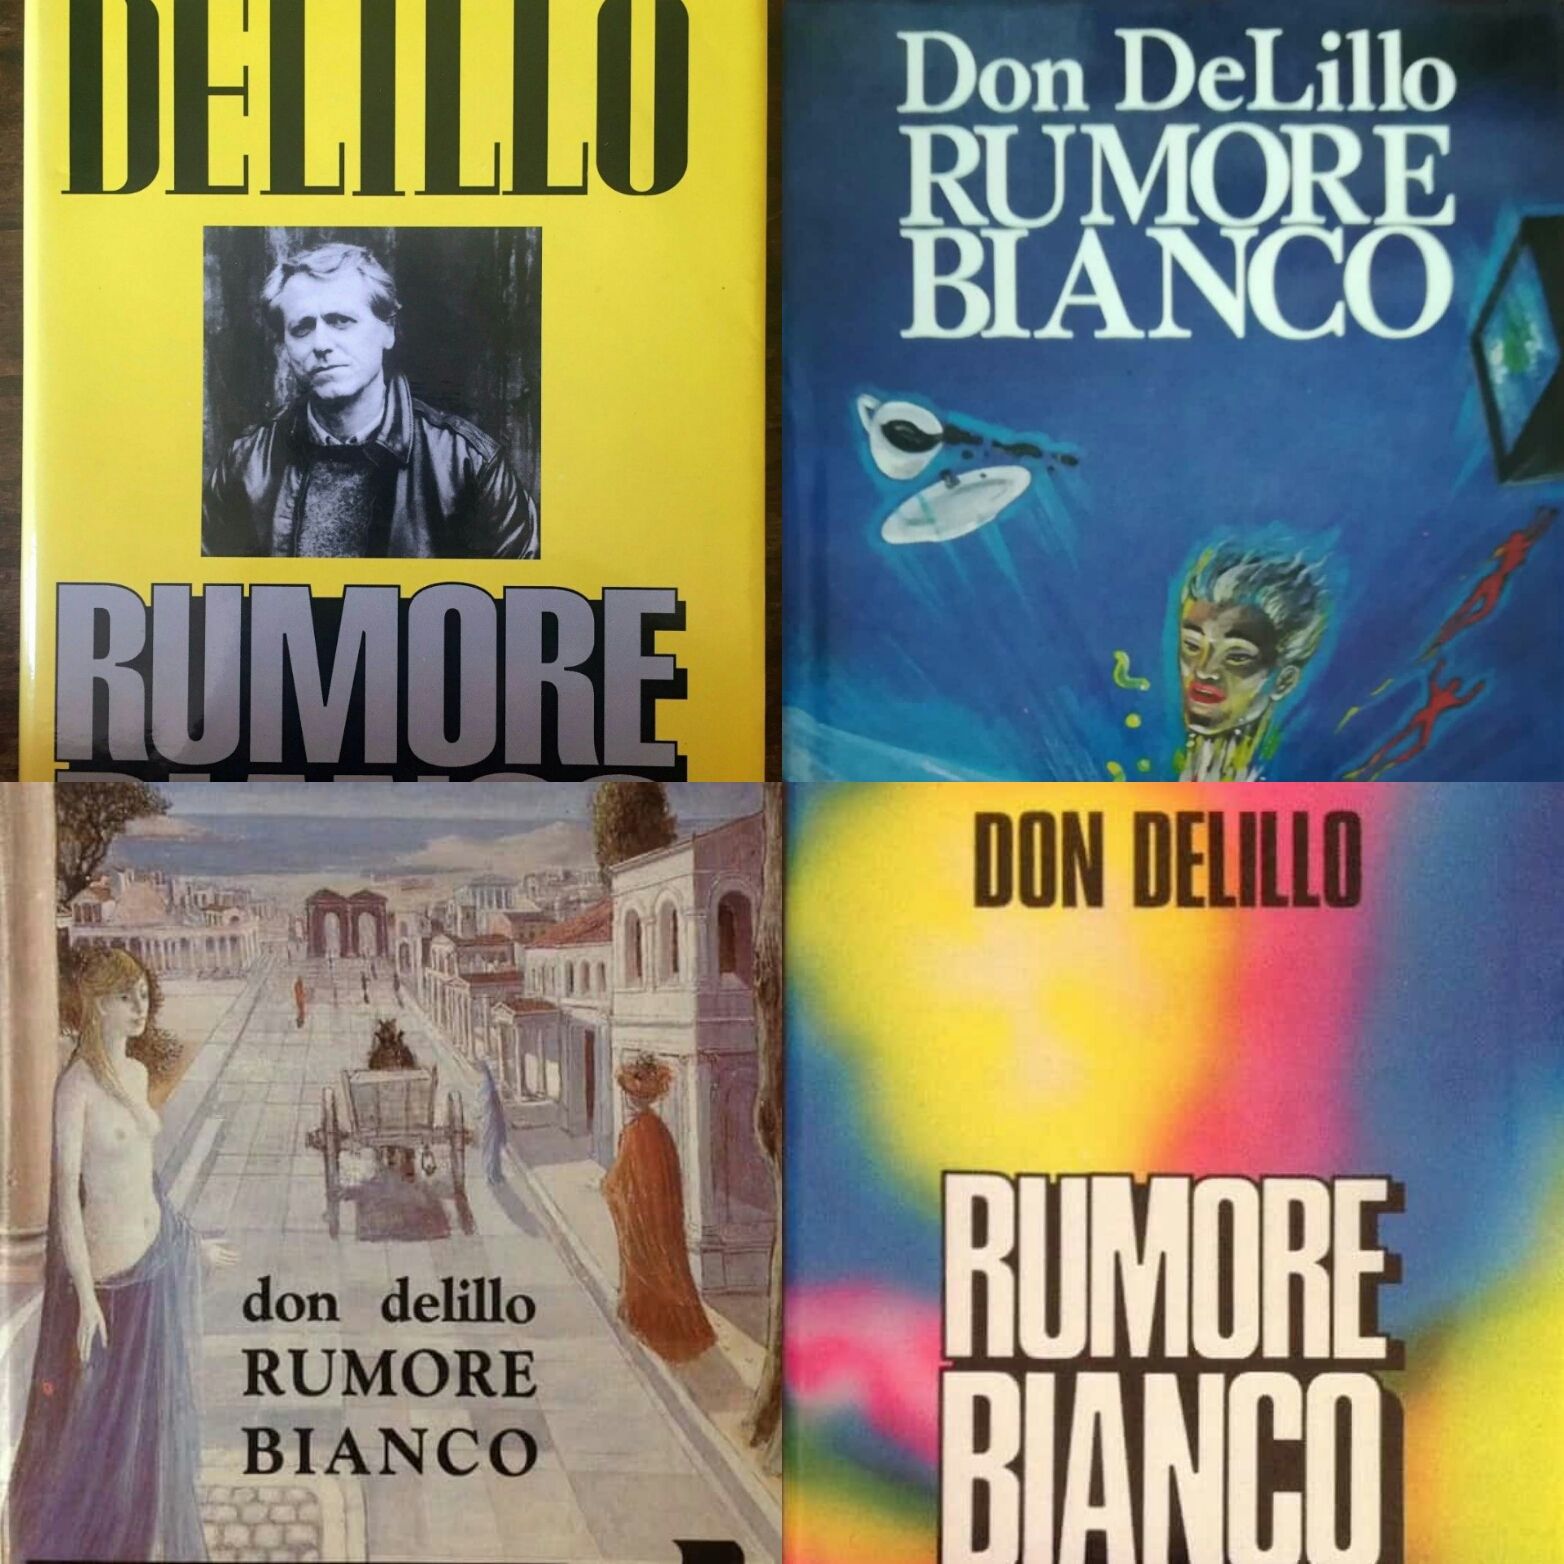 “Rumore bianco” di Don DeLillo, a caccia della vera prima edizione!